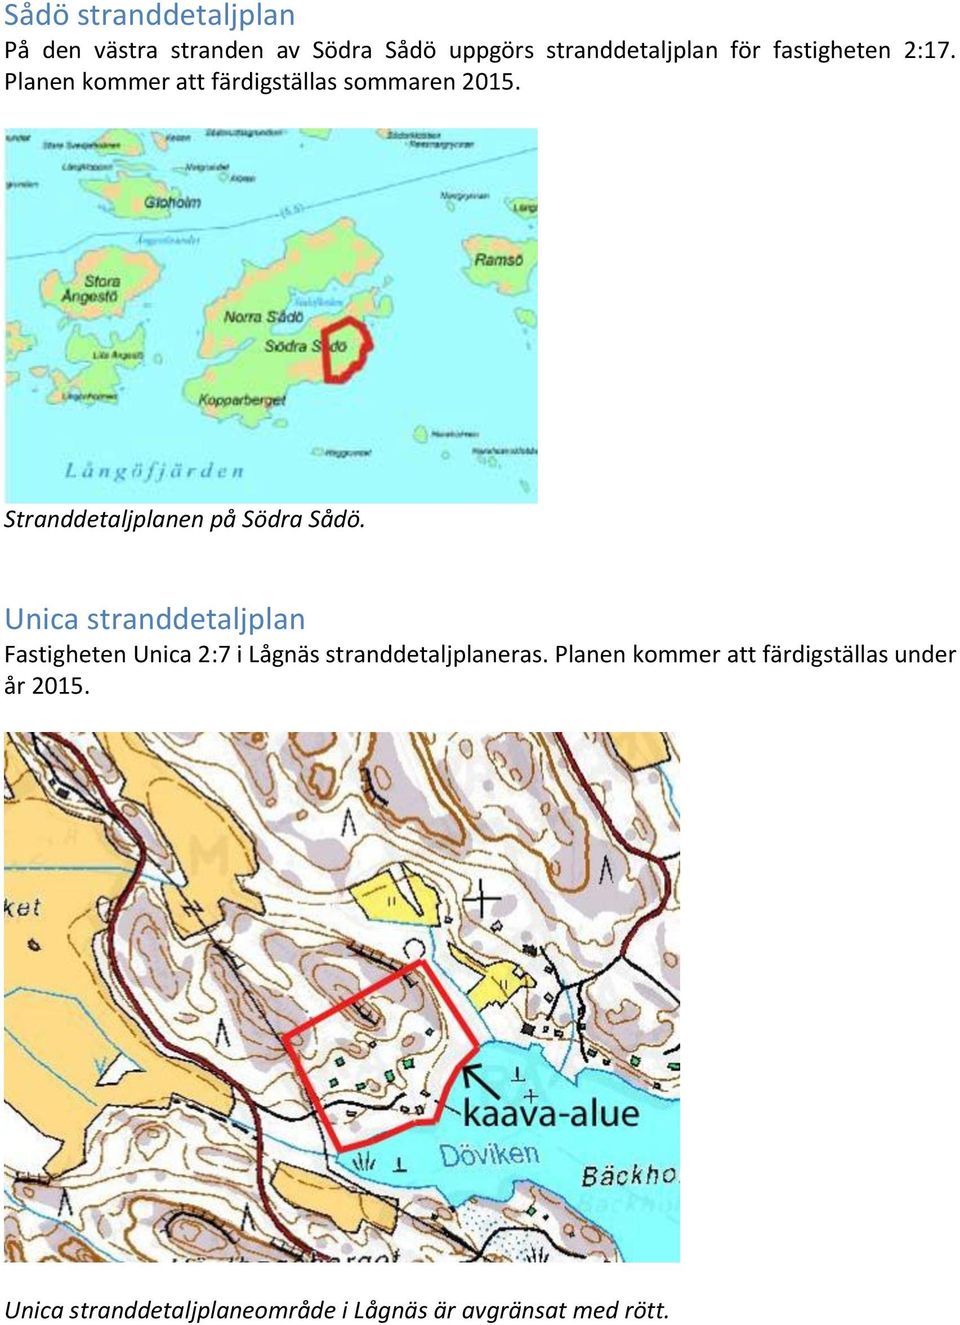 Stranddetaljplanen på Södra Sådö.